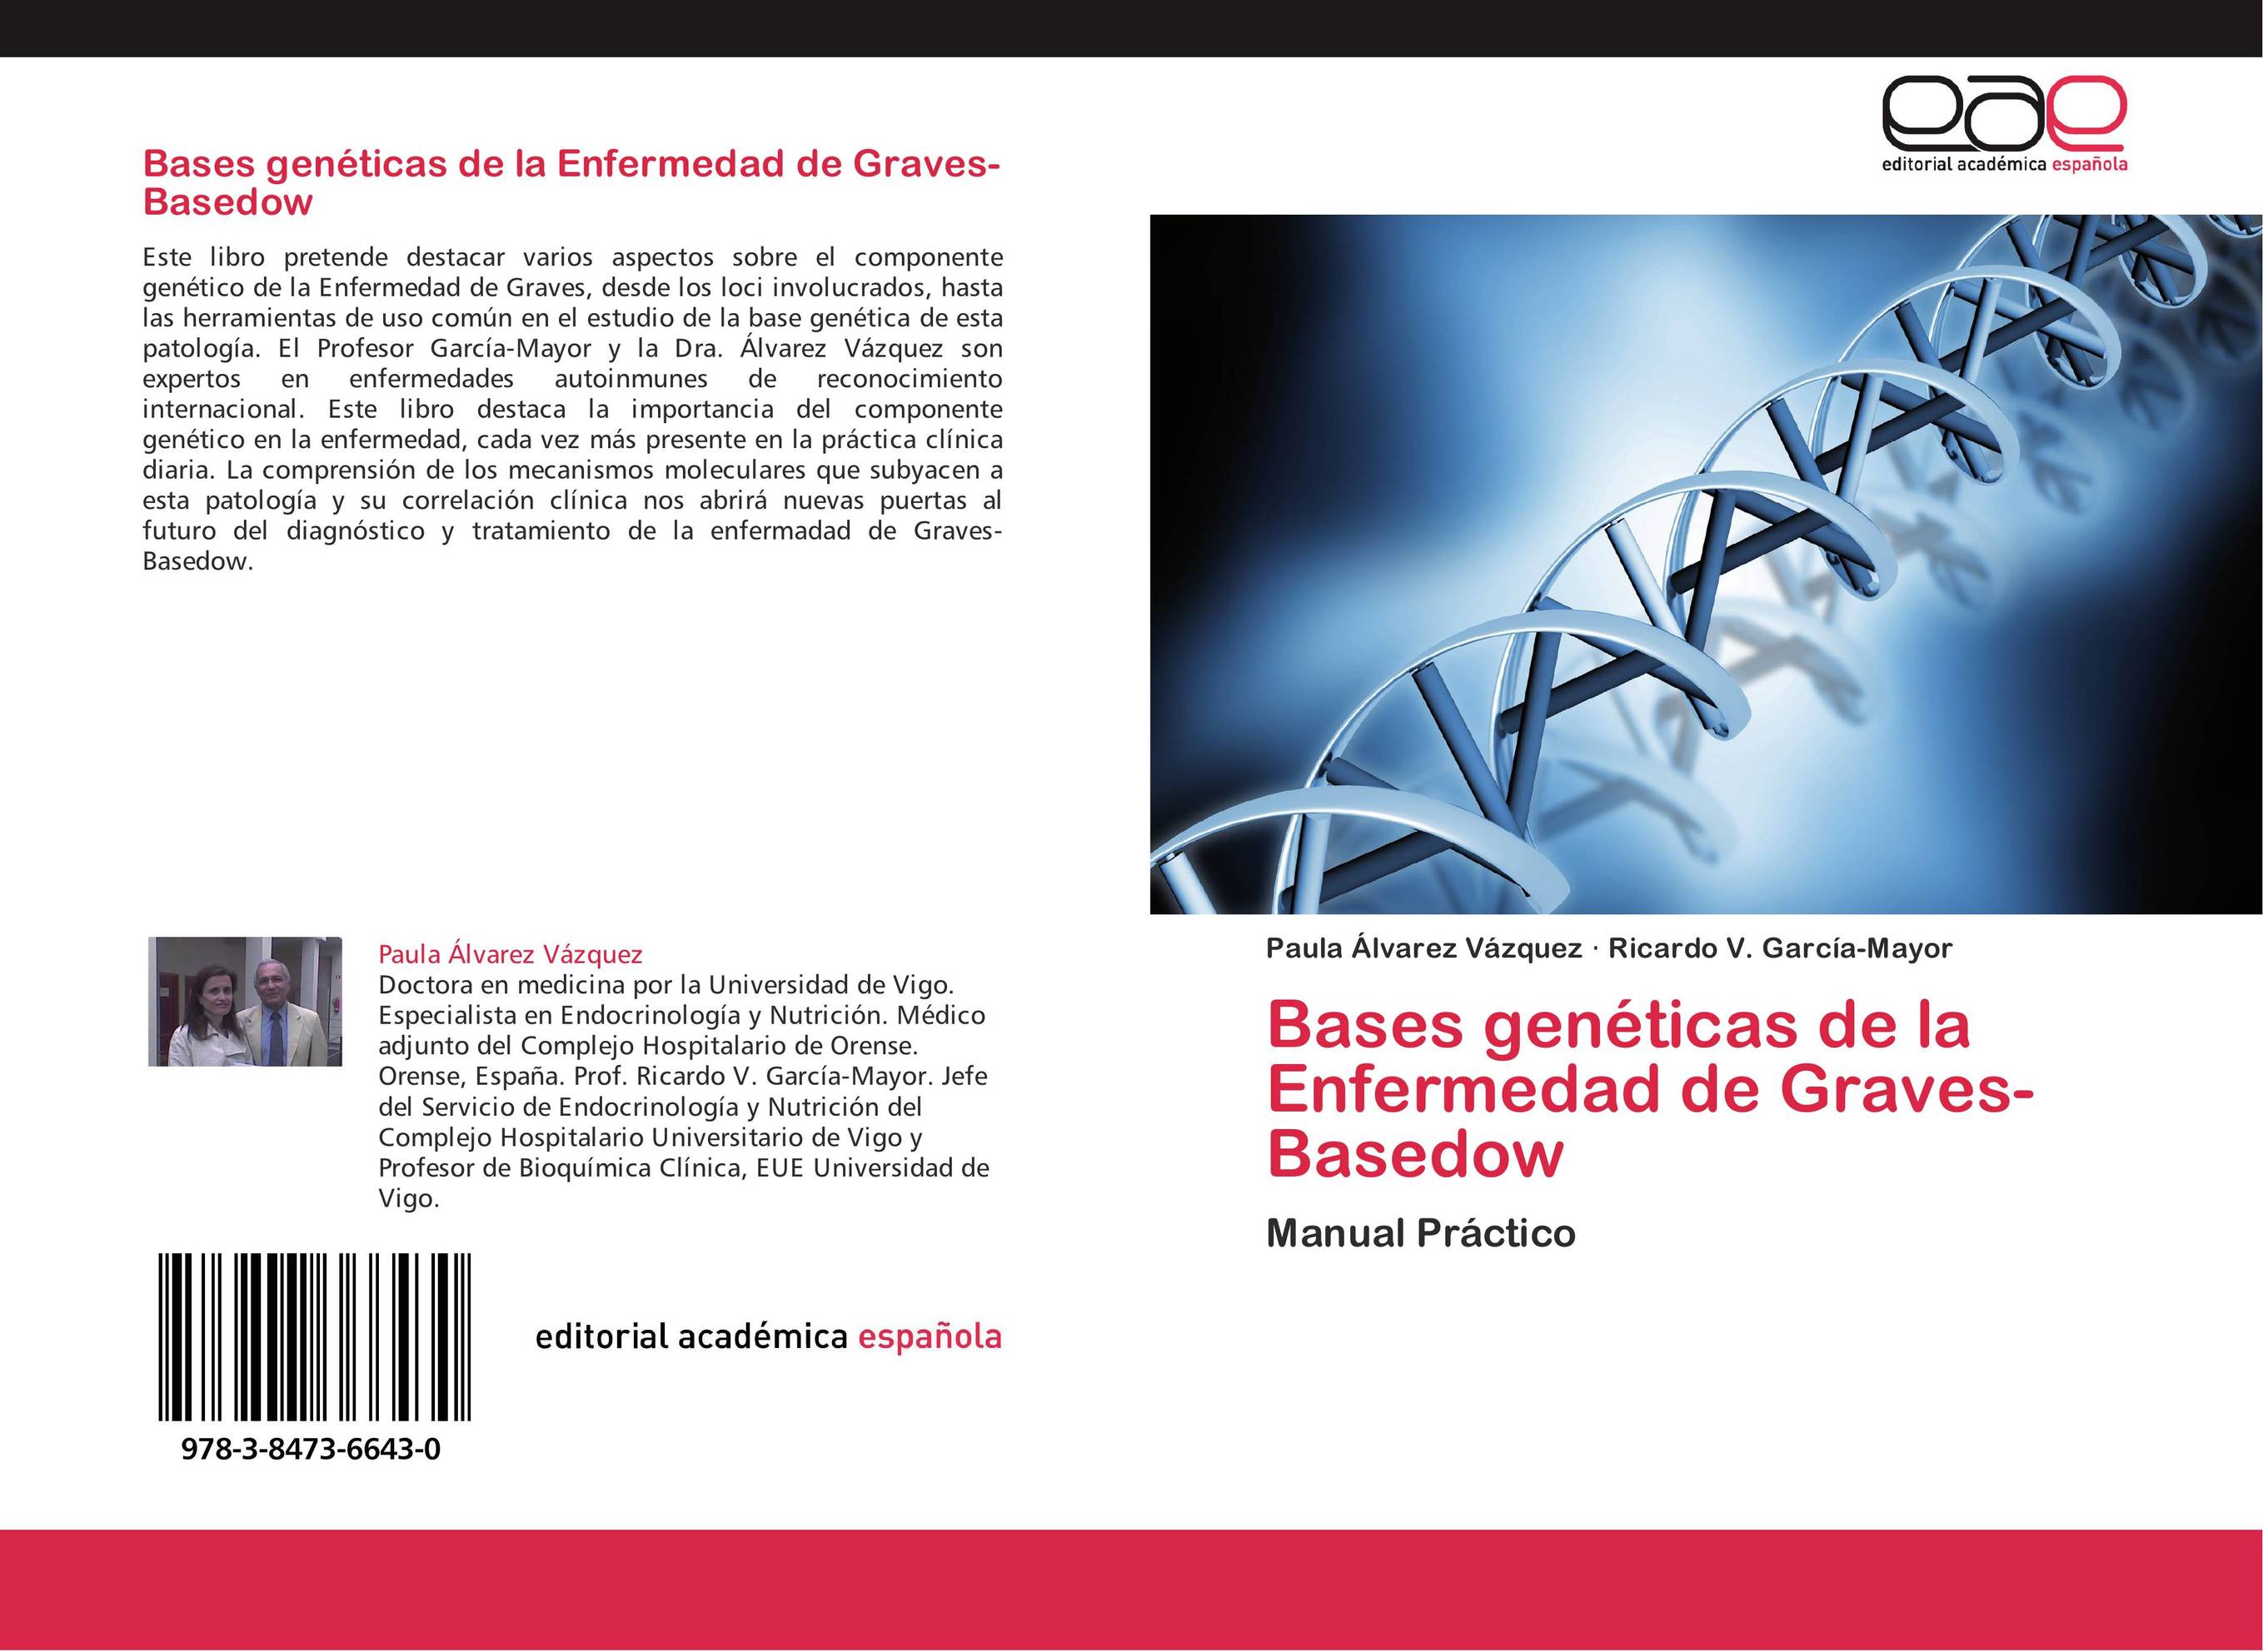 Bases genéticas de la Enfermedad de Graves-Basedow